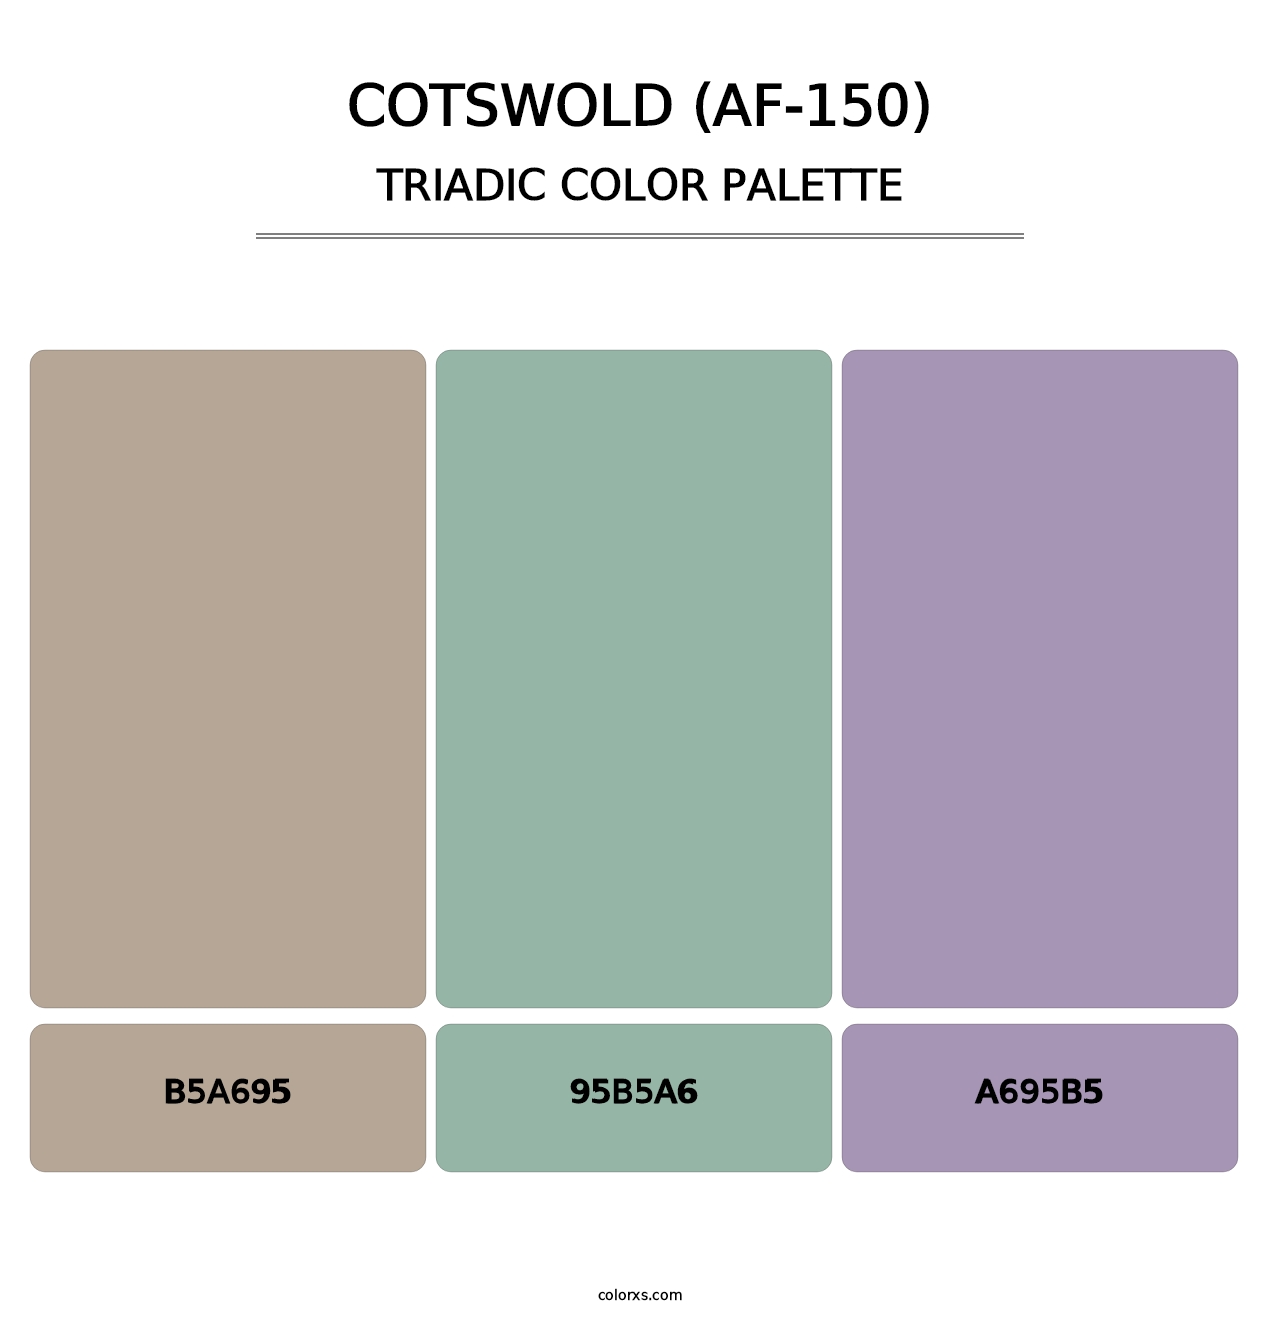 Cotswold (AF-150) - Triadic Color Palette